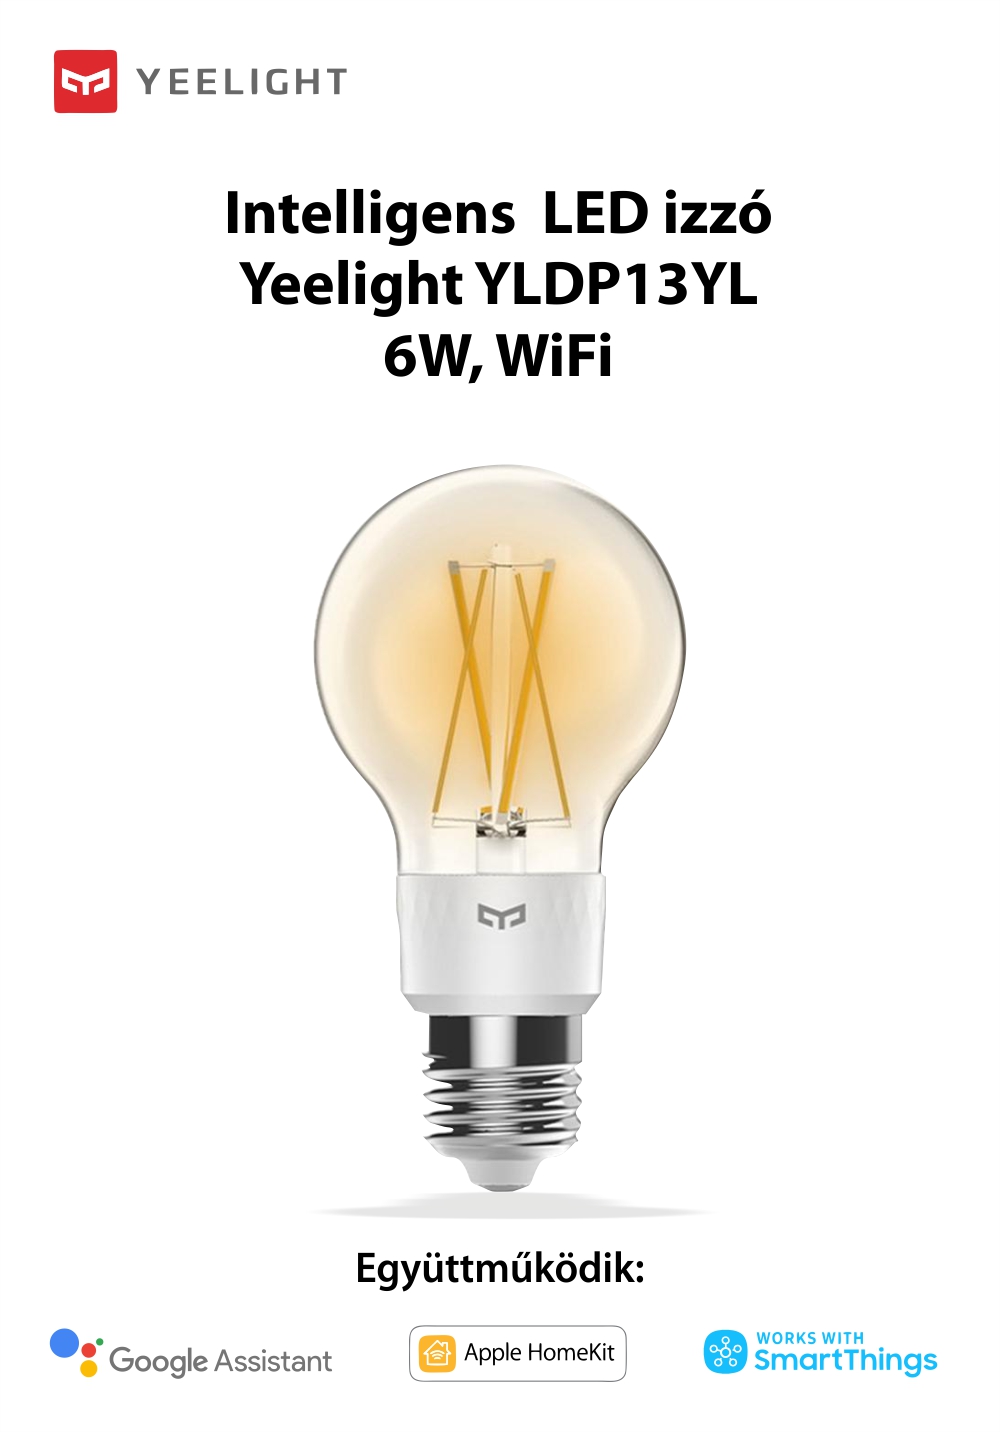 Intelligens LED Izzó YeDPlight YLDP12YL, Intelligens vezérlés, 6W, Wi-Fi, 2,4 GHz